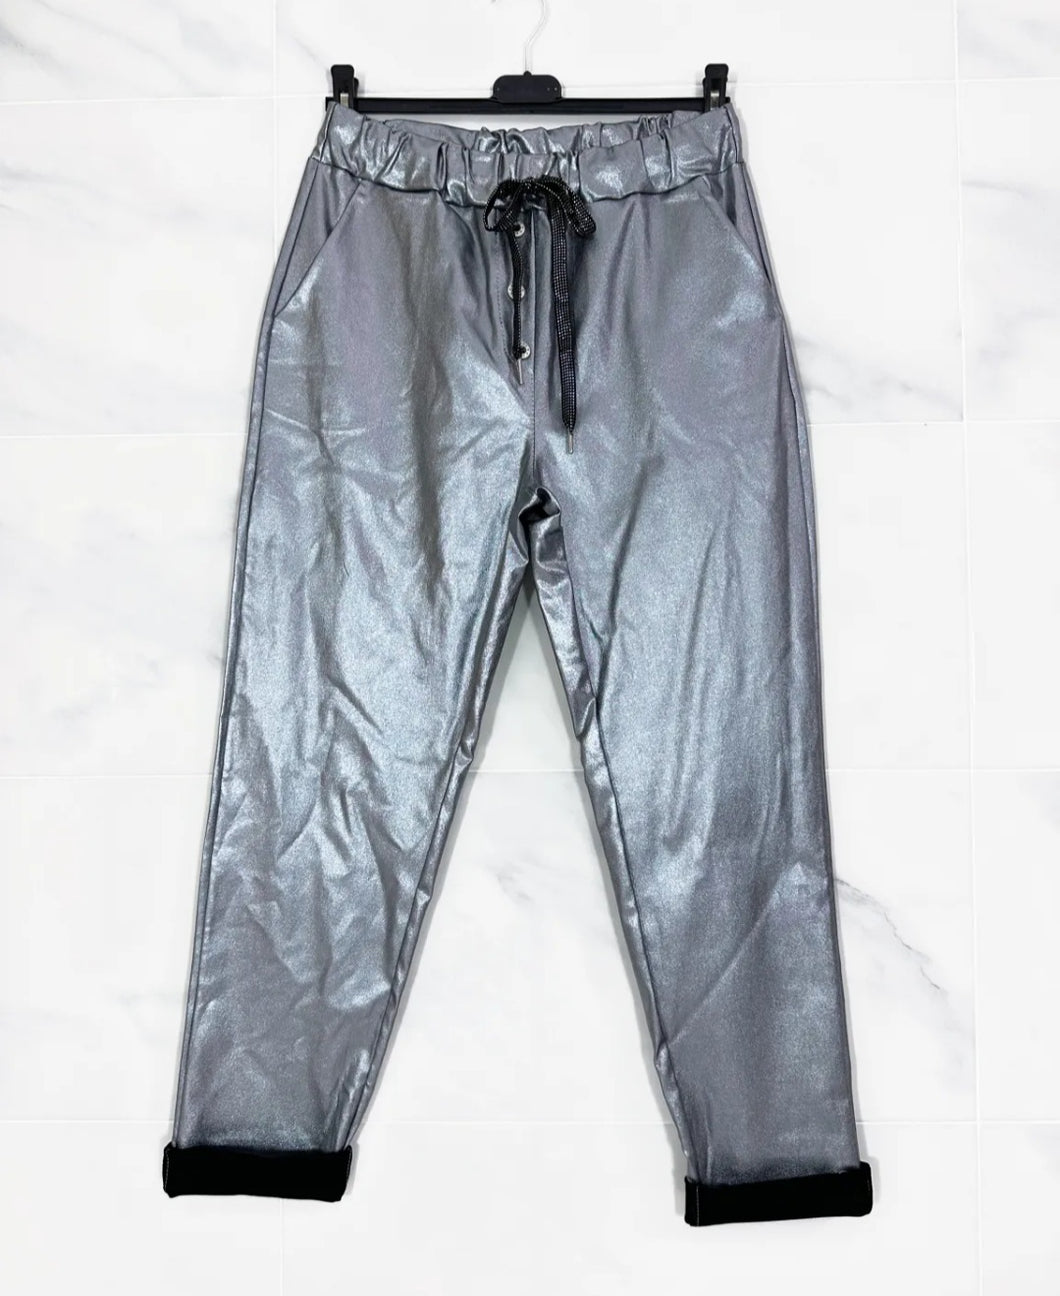 Pantalon femme uni gris argent